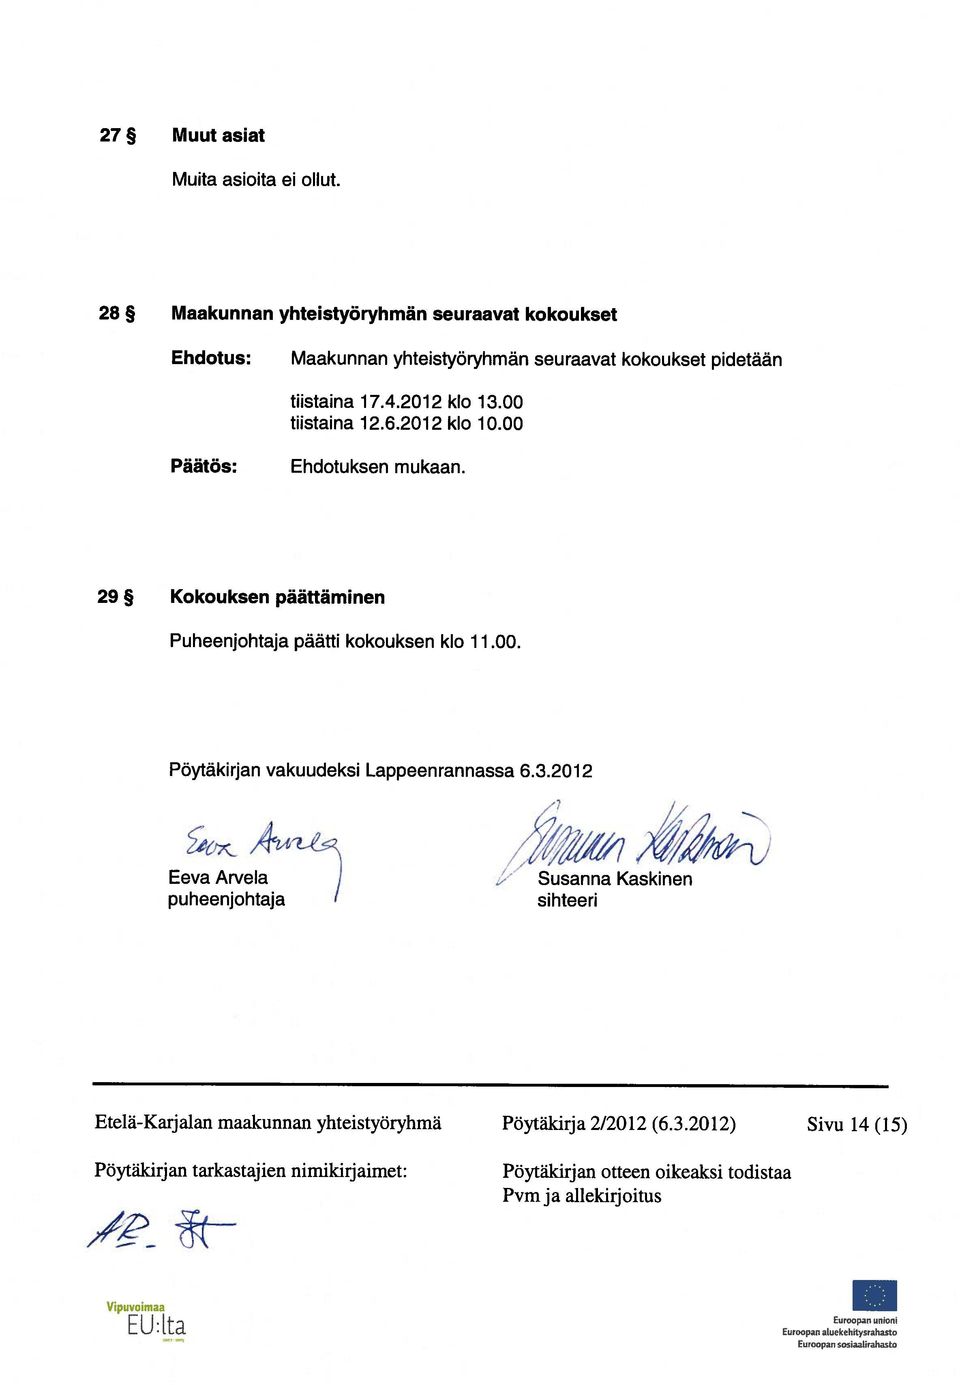 00 tiistaina 12.6.2012 klo 10.00 Ehdotuksen mukaan. 29 Kokouksen päättäminen Puheenjohtaja päätti kokouksen klo 11.00. Pöytäkirjan vakuudeksi Lappeenrannassa 6.